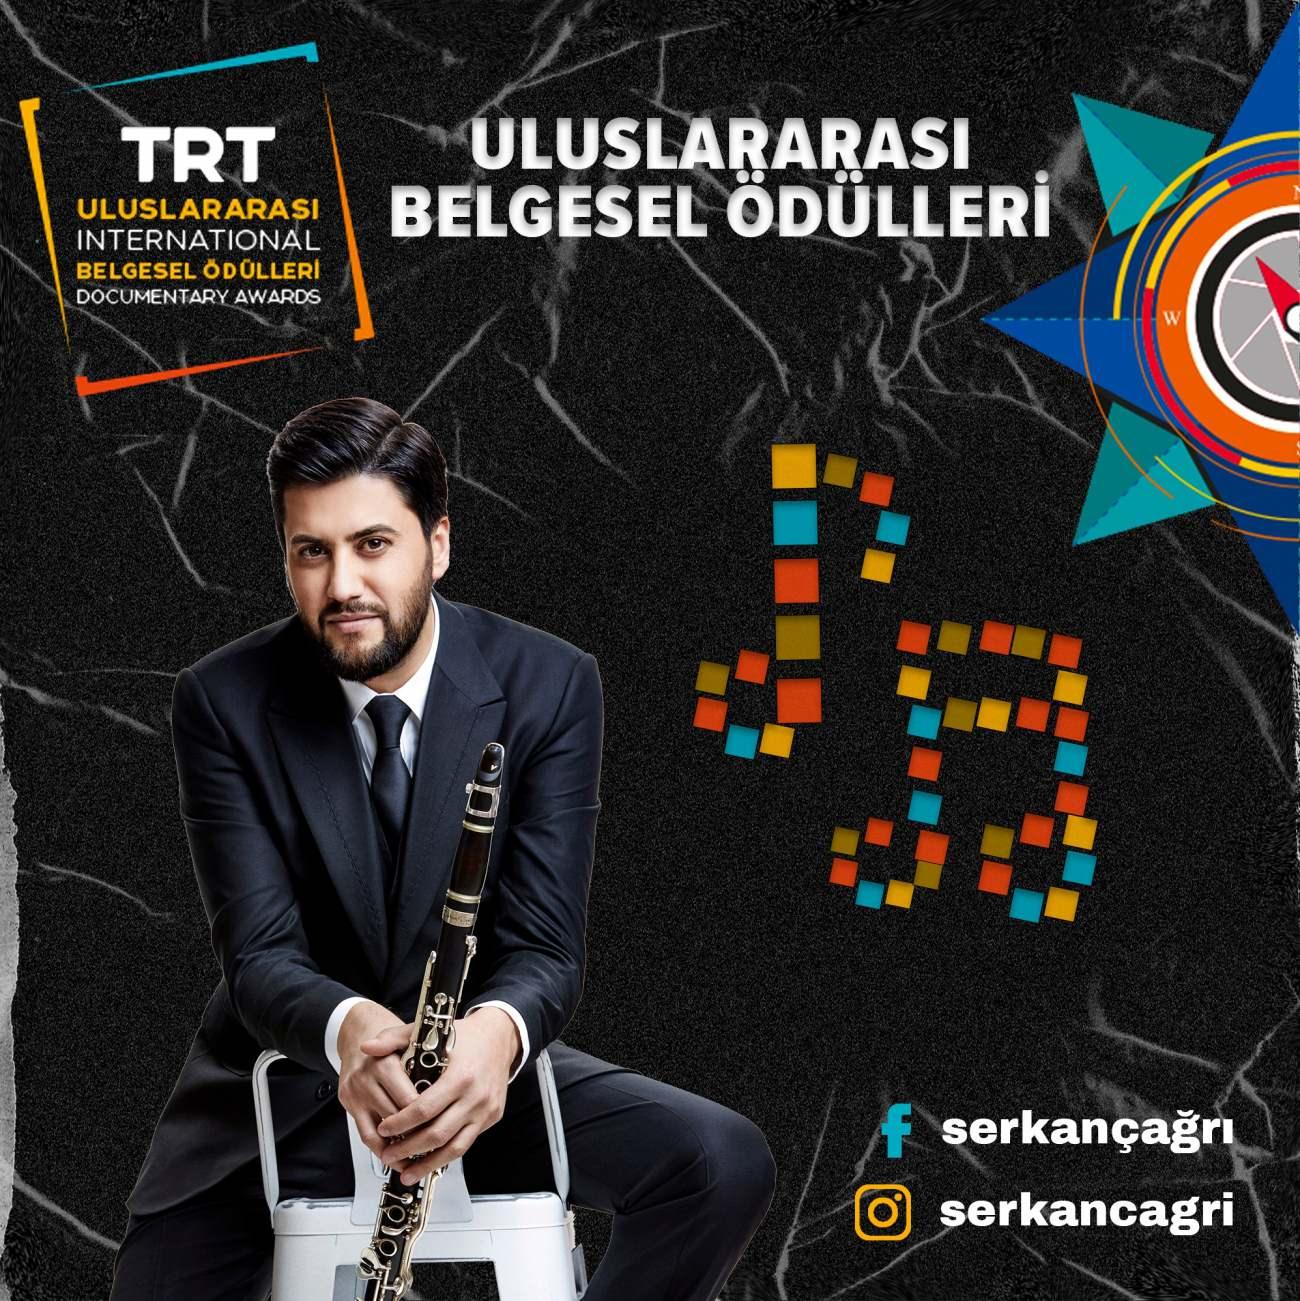 Serkan Çağrı TRTnin düzenleyeceği Uluslararası Belgesel Ödülleri programında sahne alacak